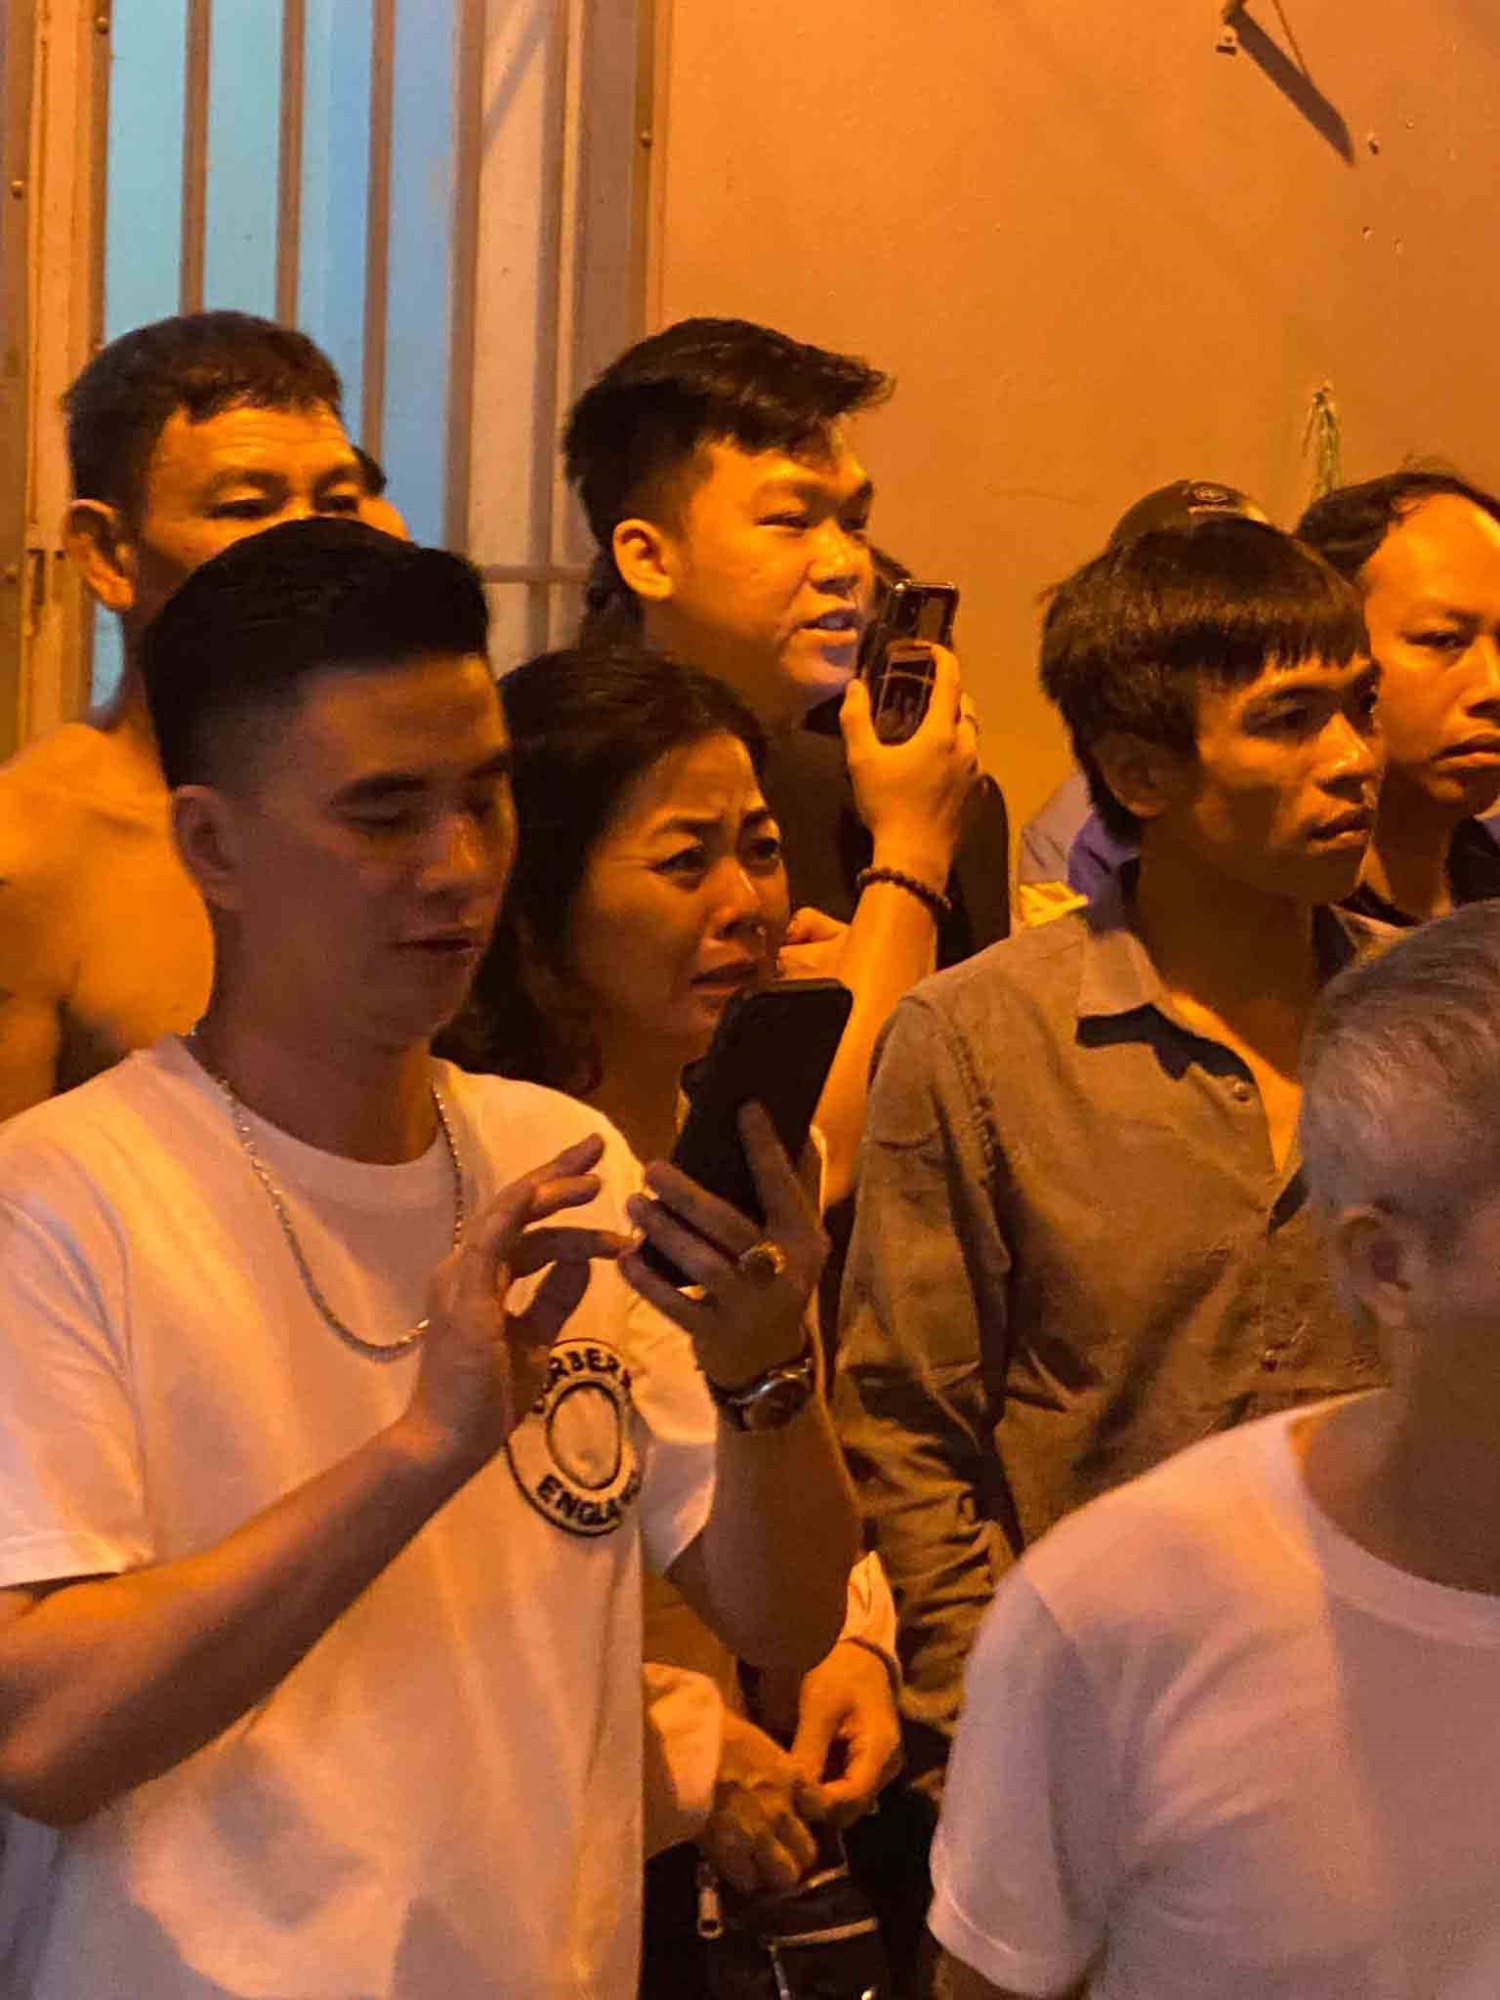   Người dân bàng hoàng theo dõi vụ cháy, những giọt nước mắt xót xa cho các nạn nhân bỏ mạng trong biển lửa - Ảnh: Hà Nội News